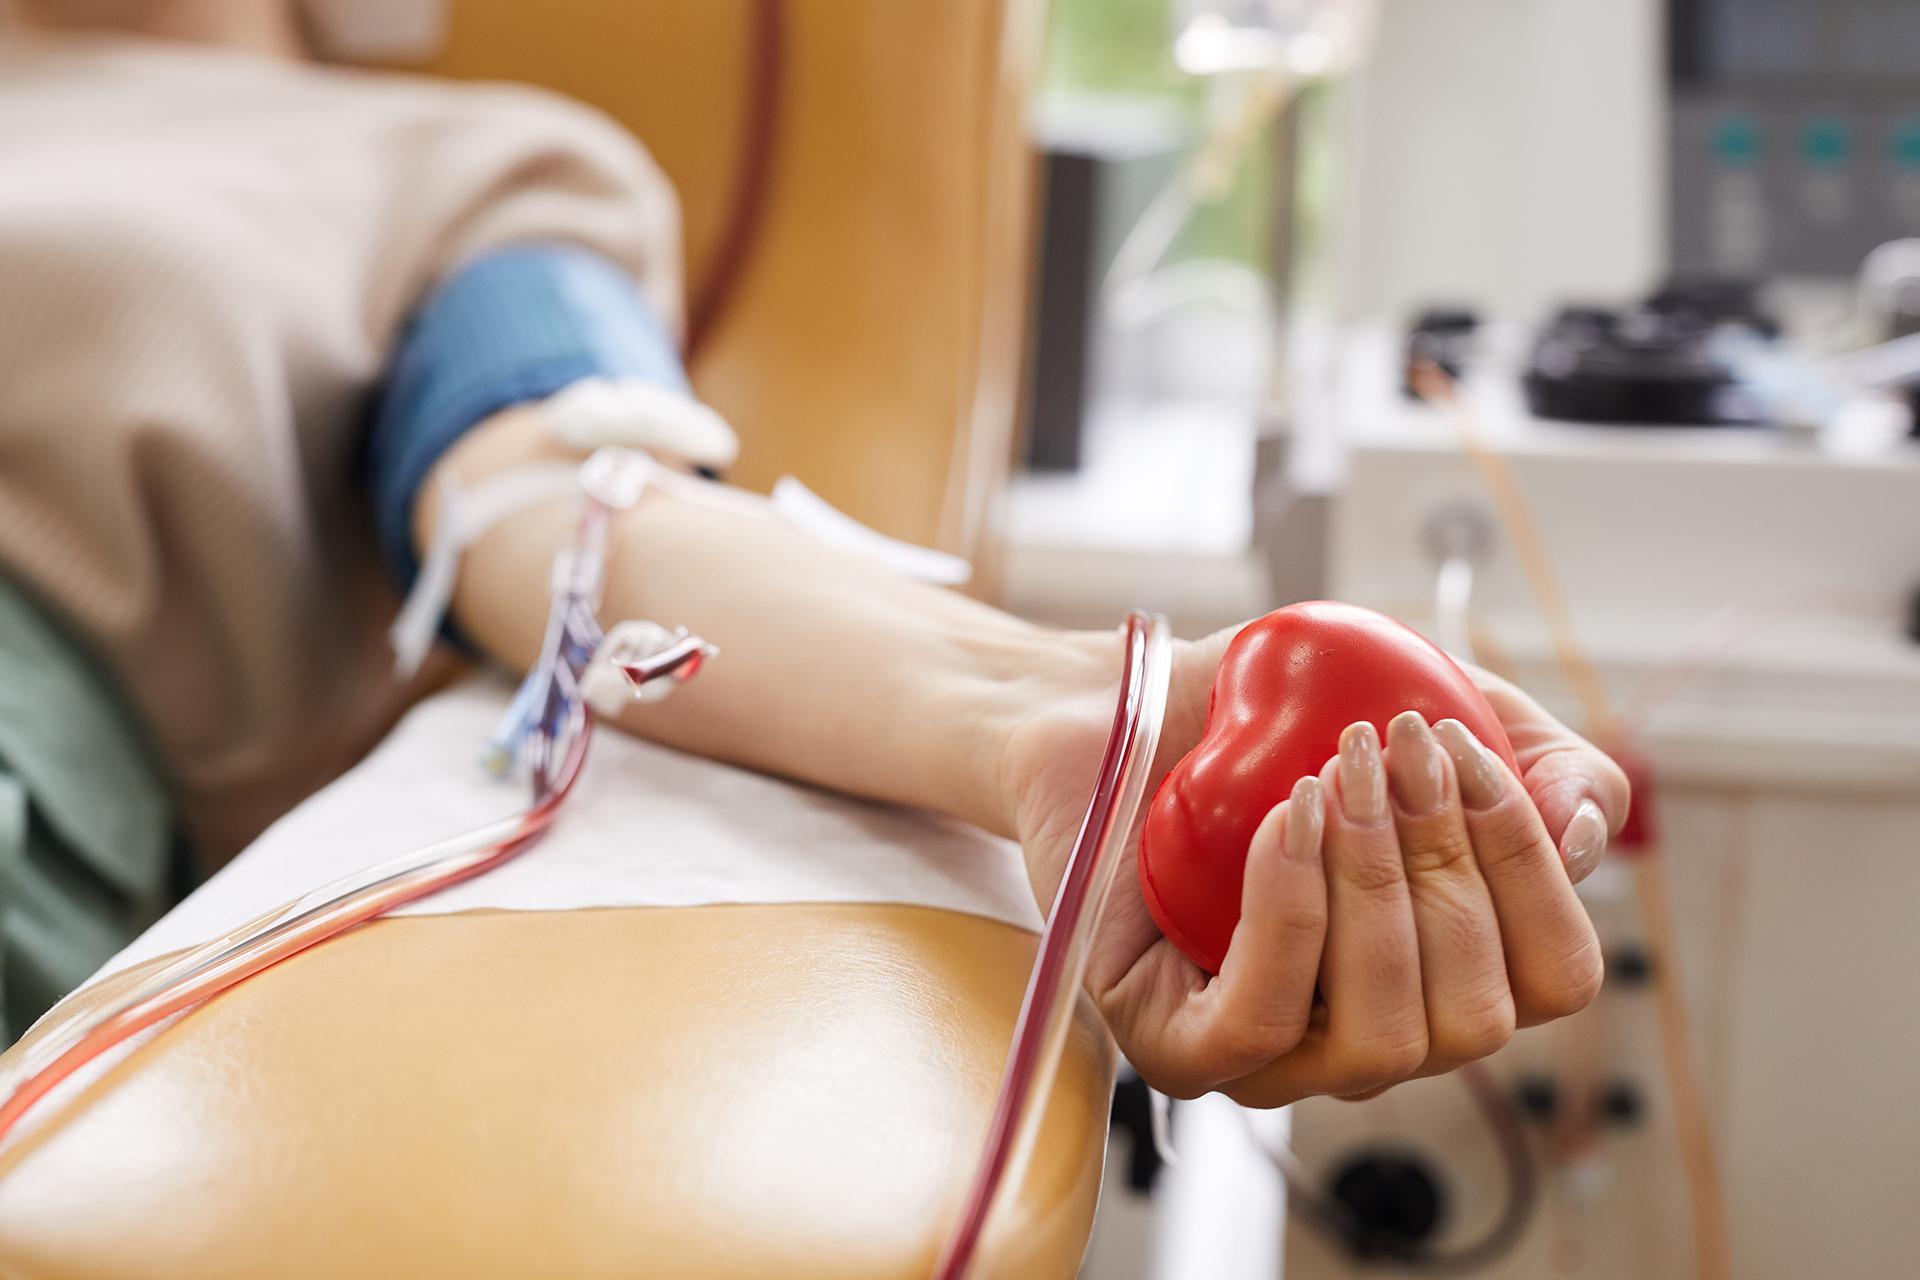 इस विश्व रक्तदाता दिवस पर, रक्त दें और जीवन बचाएं। यहाँ क्यों और कैसे है